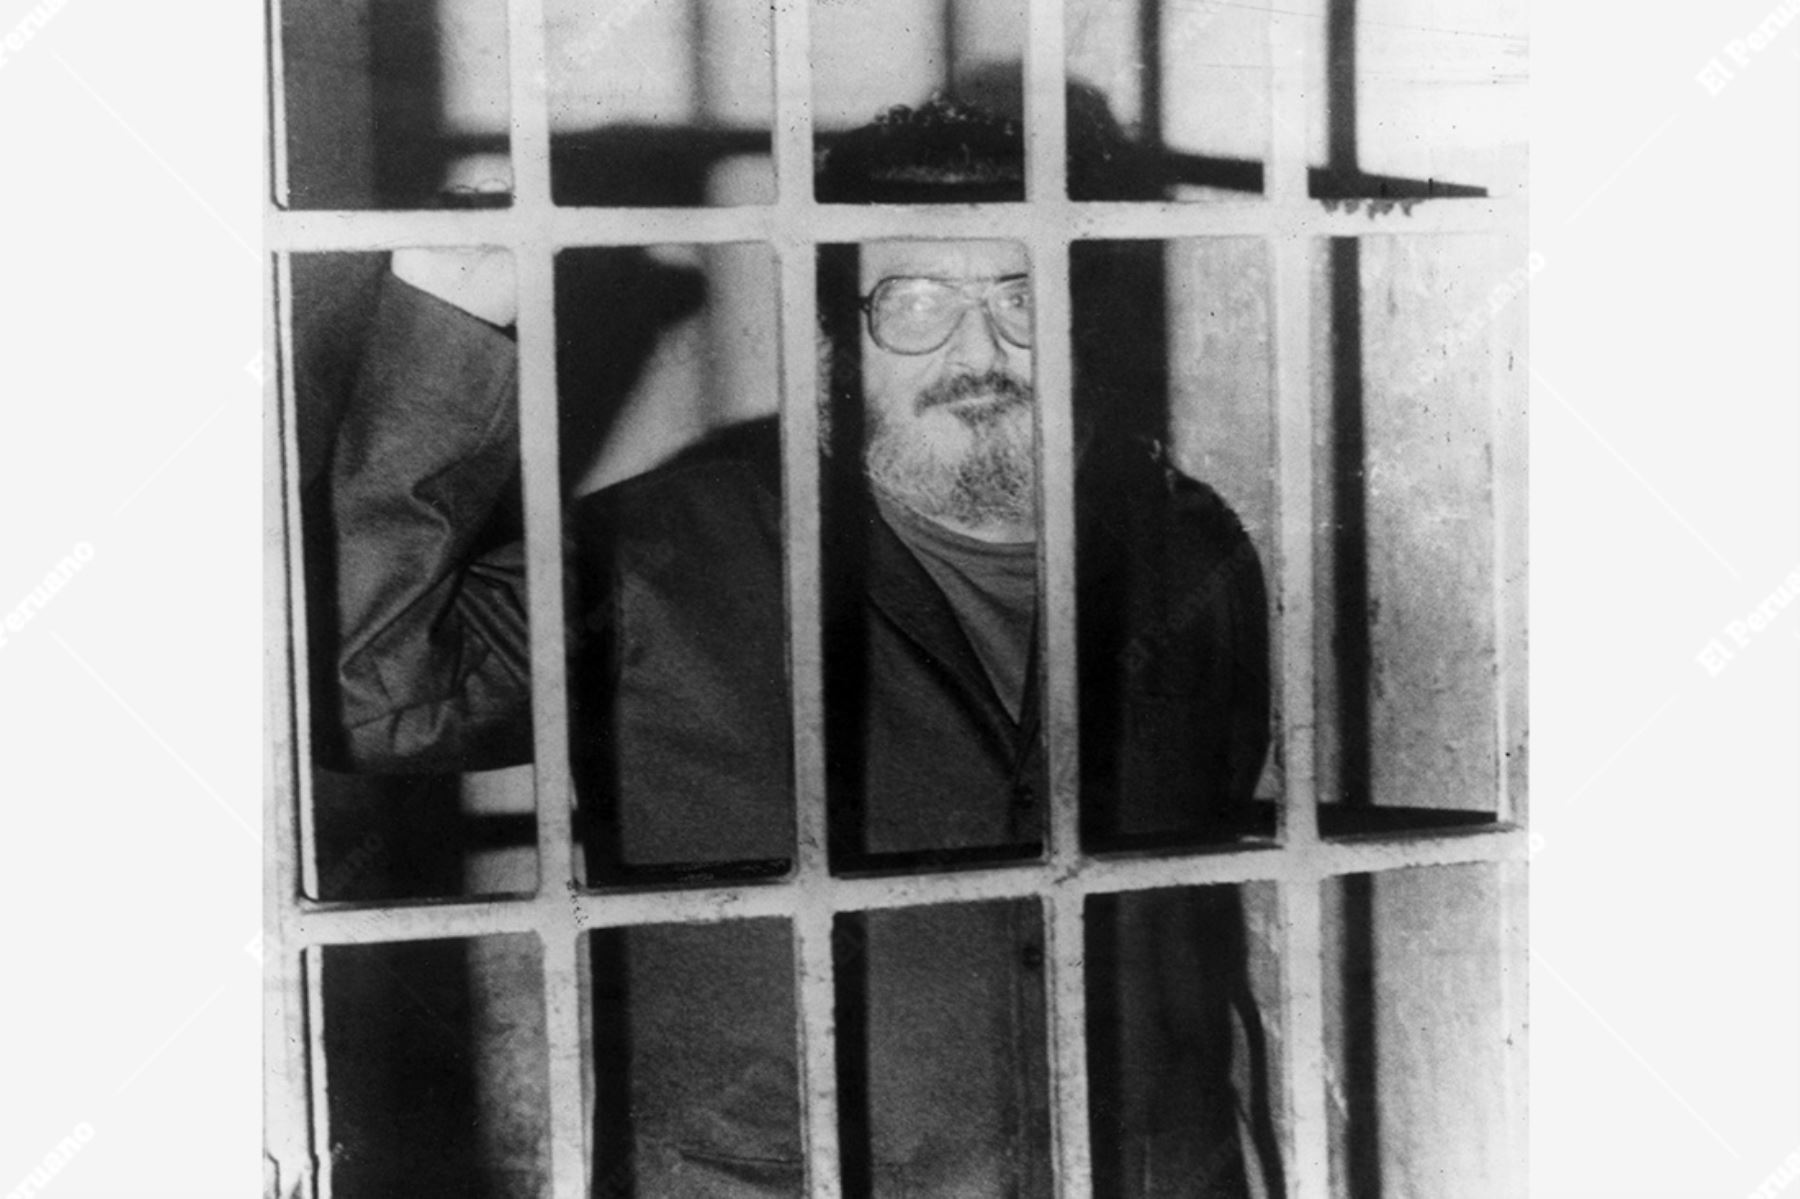 Lima - 14 set 1992. Abimael Guzmán Reynoso cabecilla de Sendero Luminoso encarcelado luego de su captura en un barrio residencial de Lima. Foto: Difusión